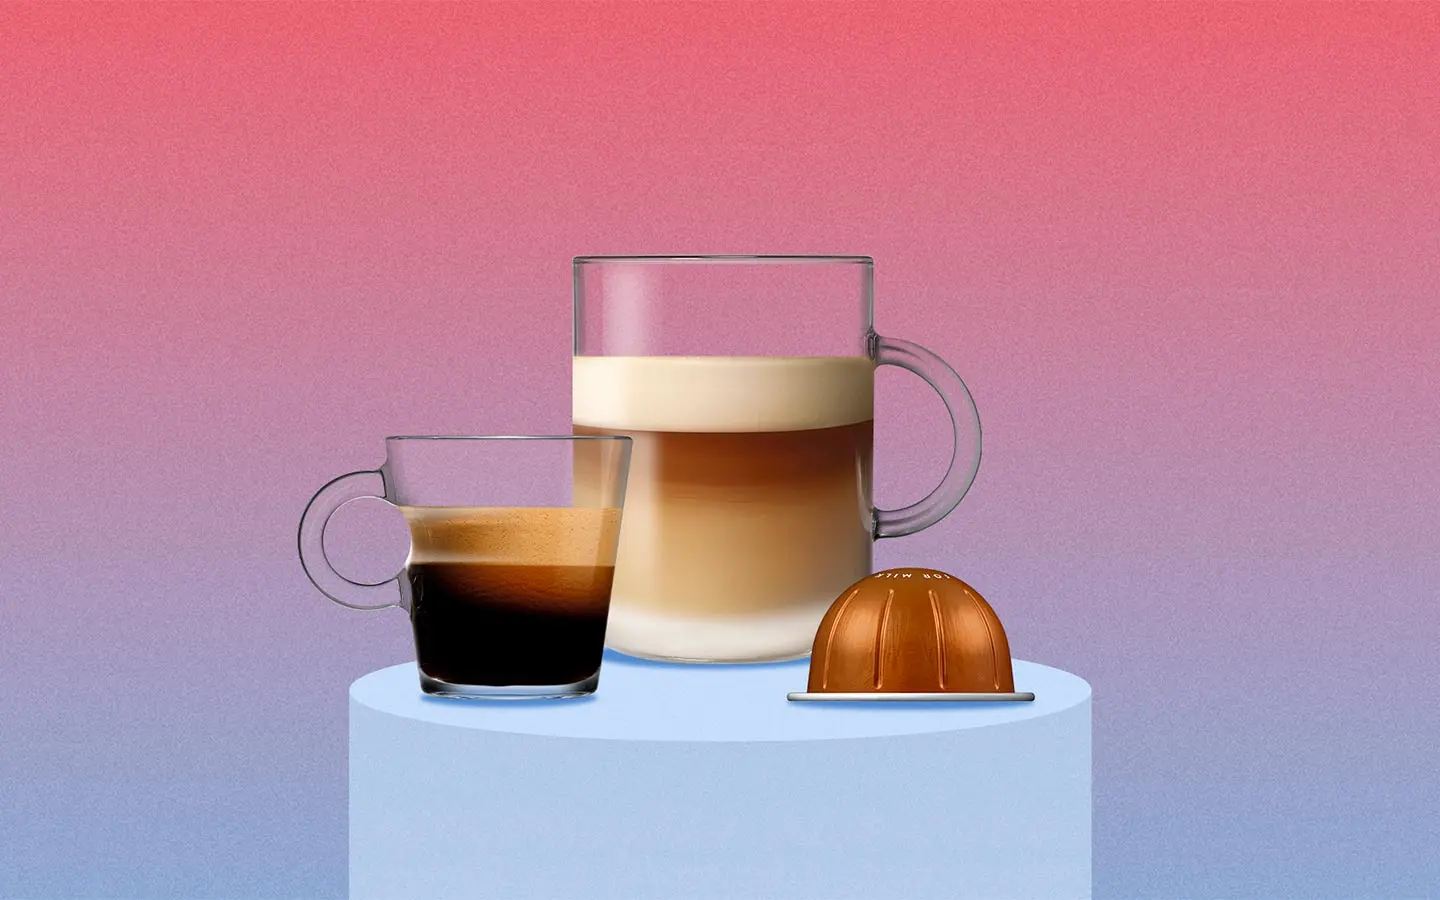 Llegan los Coffee Days de Nespresso con increíbles beneficios